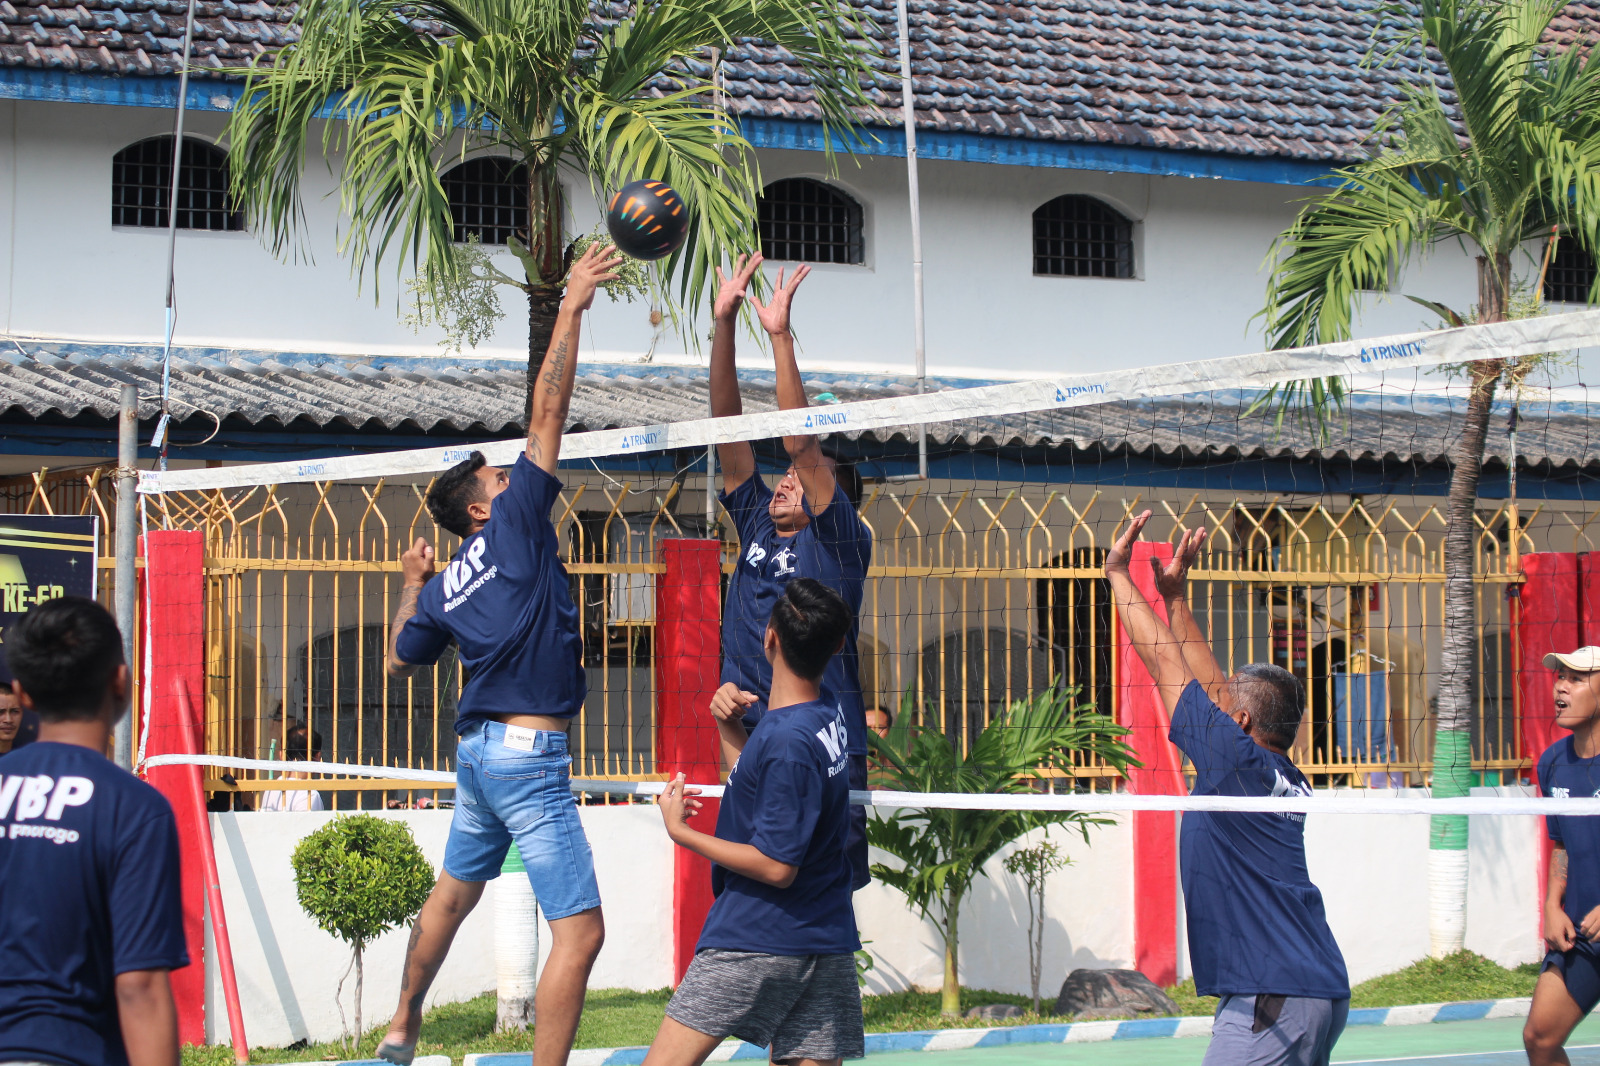 Resmi Dimulai, Pertandingan Bola Volley Antar WBP Rutan Ponorogo Berlangsung Seru